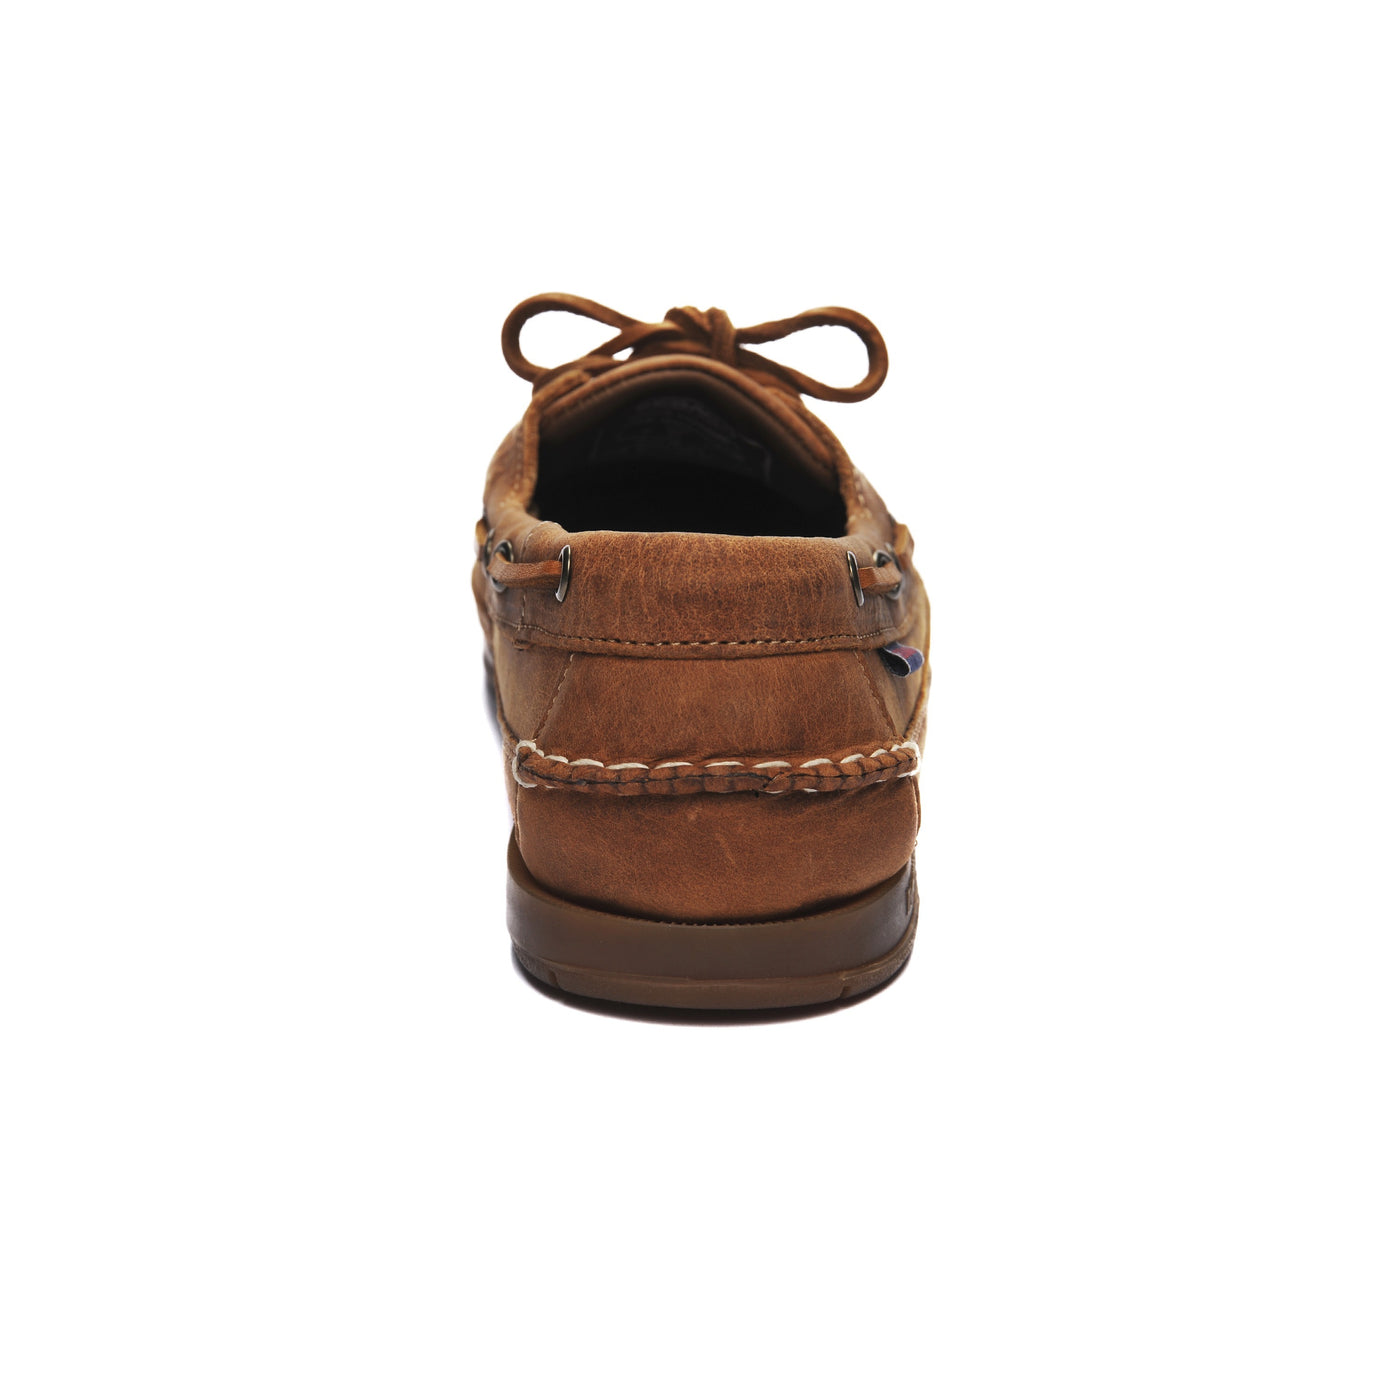 Sebago Schooner Saddler's Leather Shoe | SendIt Sailing